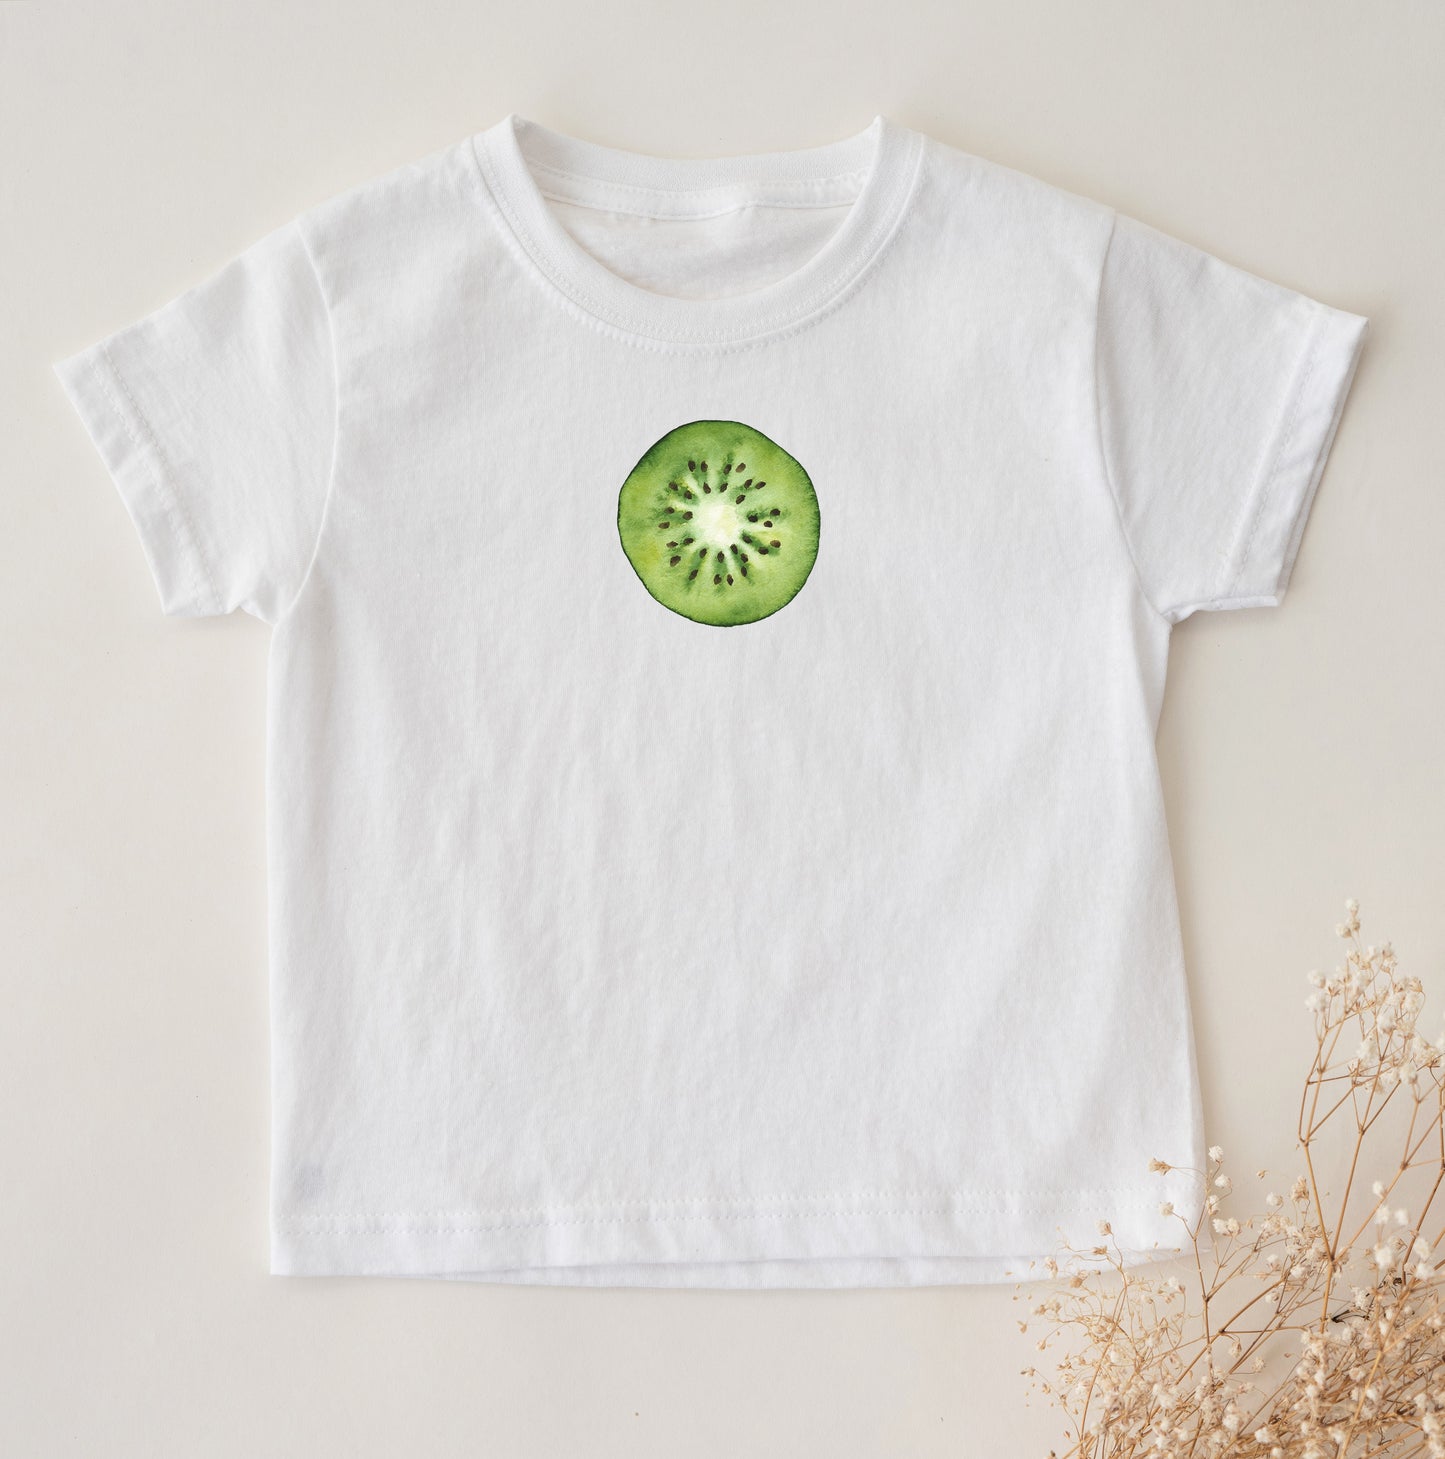 Kiwi Fruit Print Graphic Tshirt for Toddler Kids